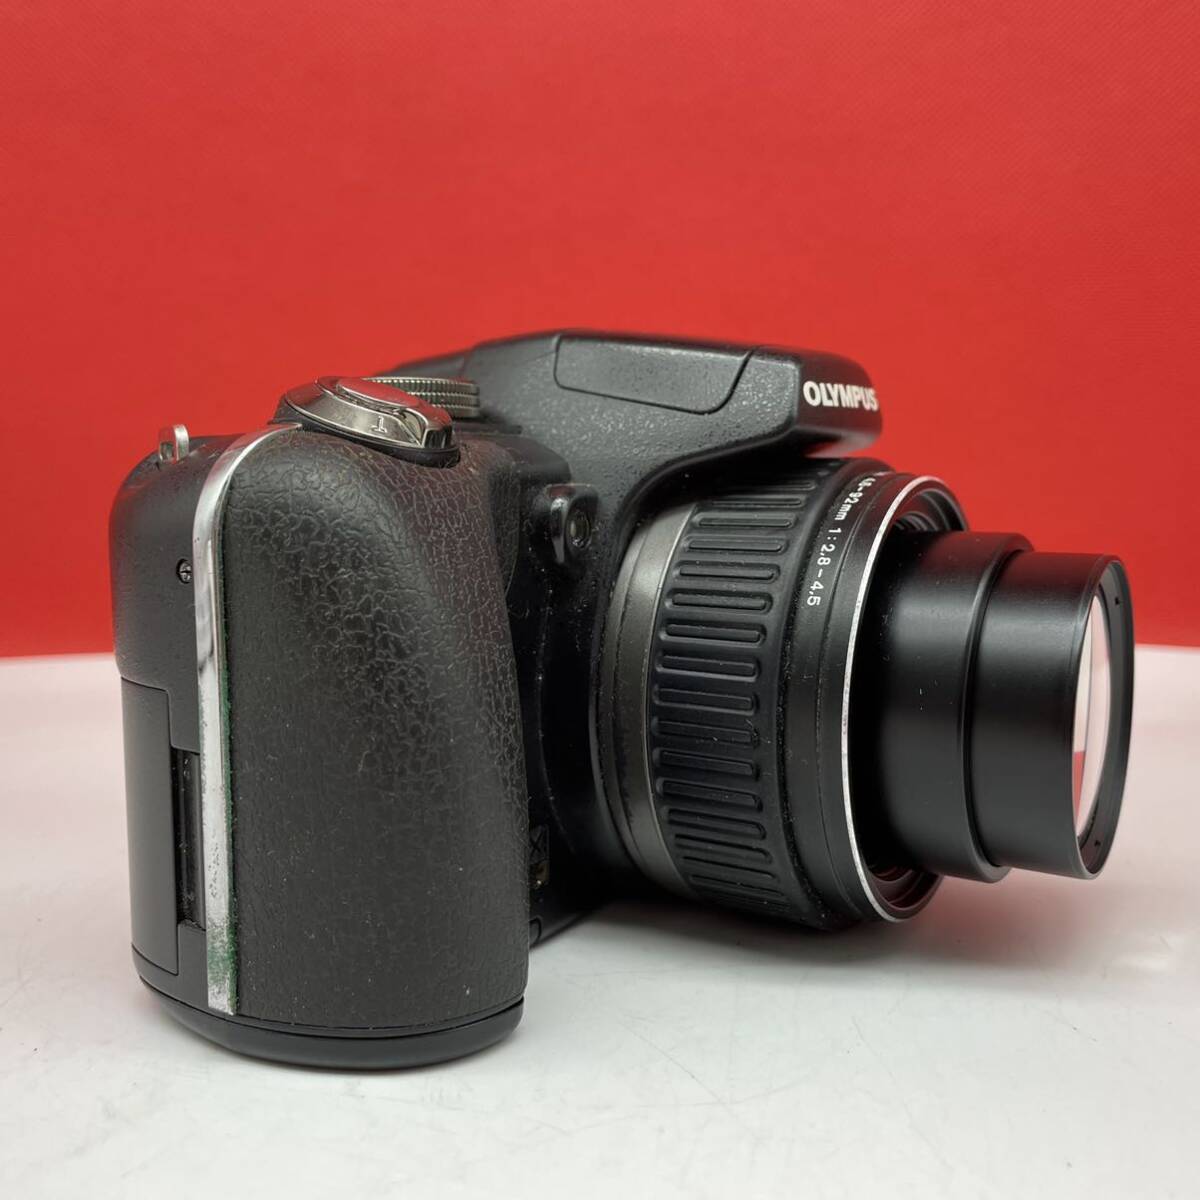 * OLYMPUS SP-565UZ compact digital camera ED LENS AF ZOOM 4.6-92mm F2.8-4.5 shutter, flash OK Olympus 